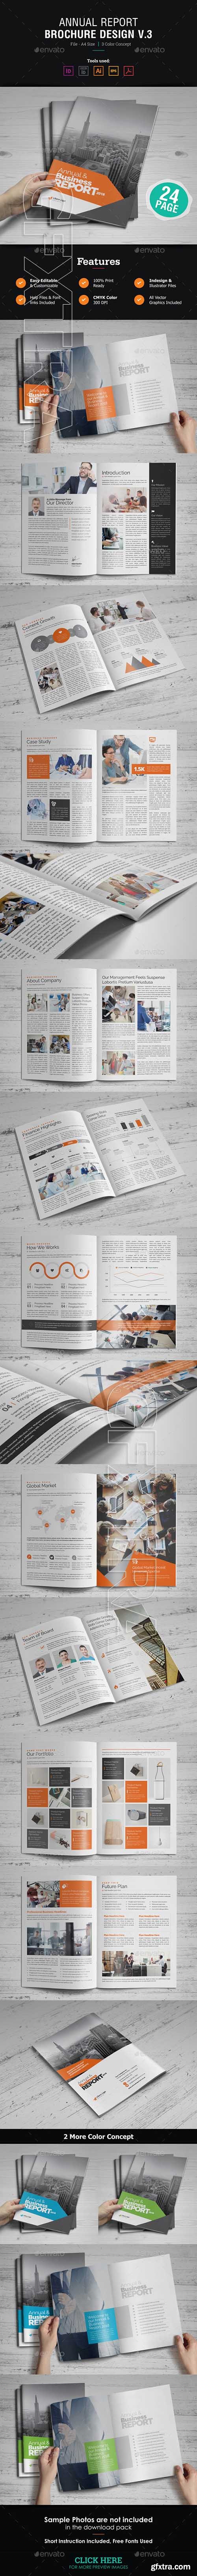 GraphicRiver - Annual Report Design v3 21168598